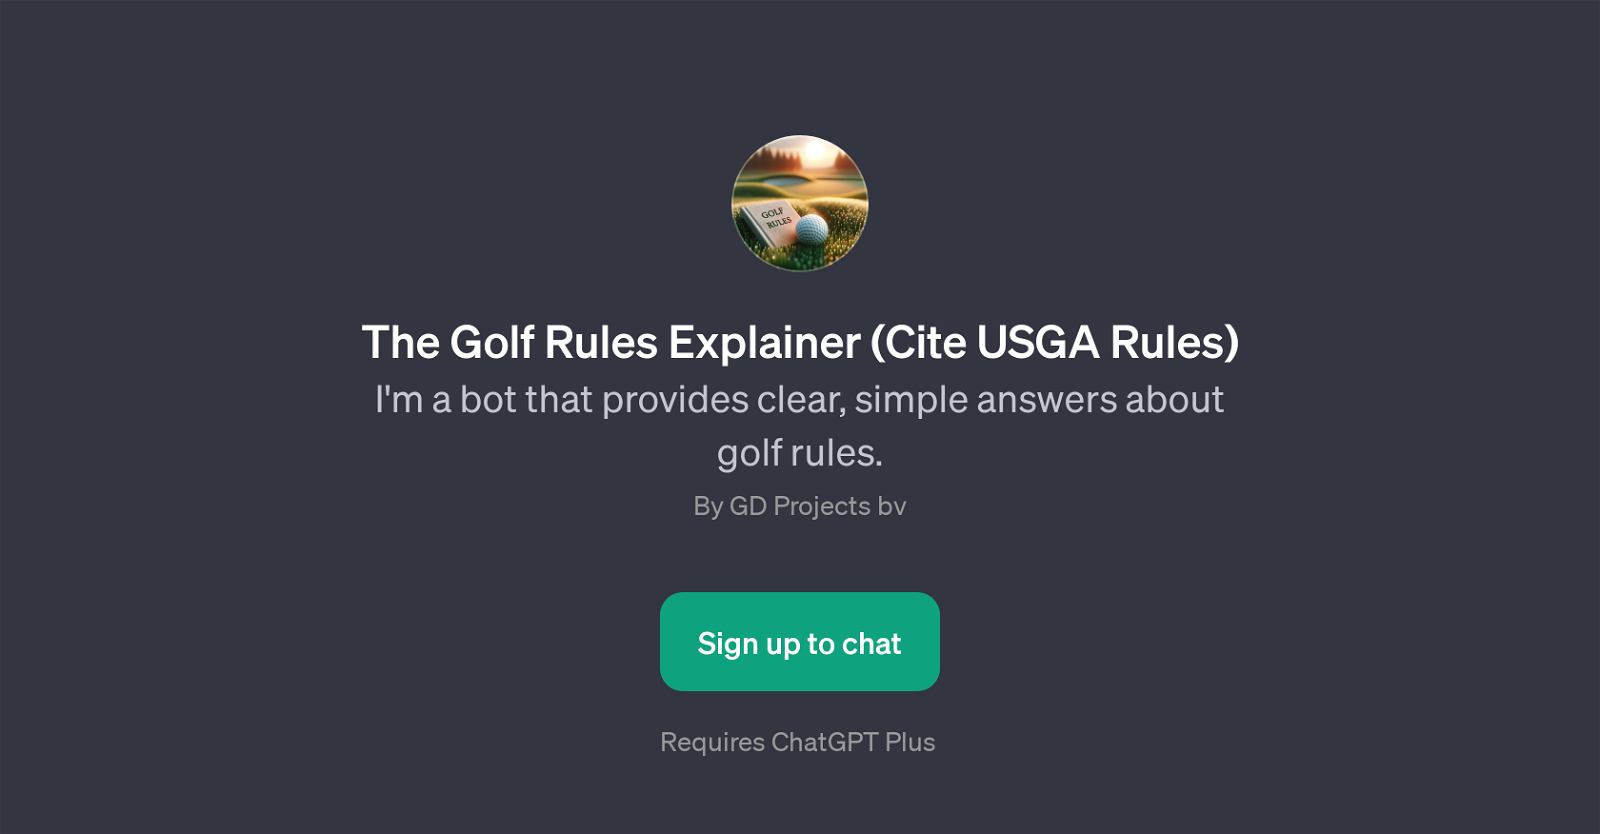 The Golf Rules Explainer (Cite USGA Rules) website